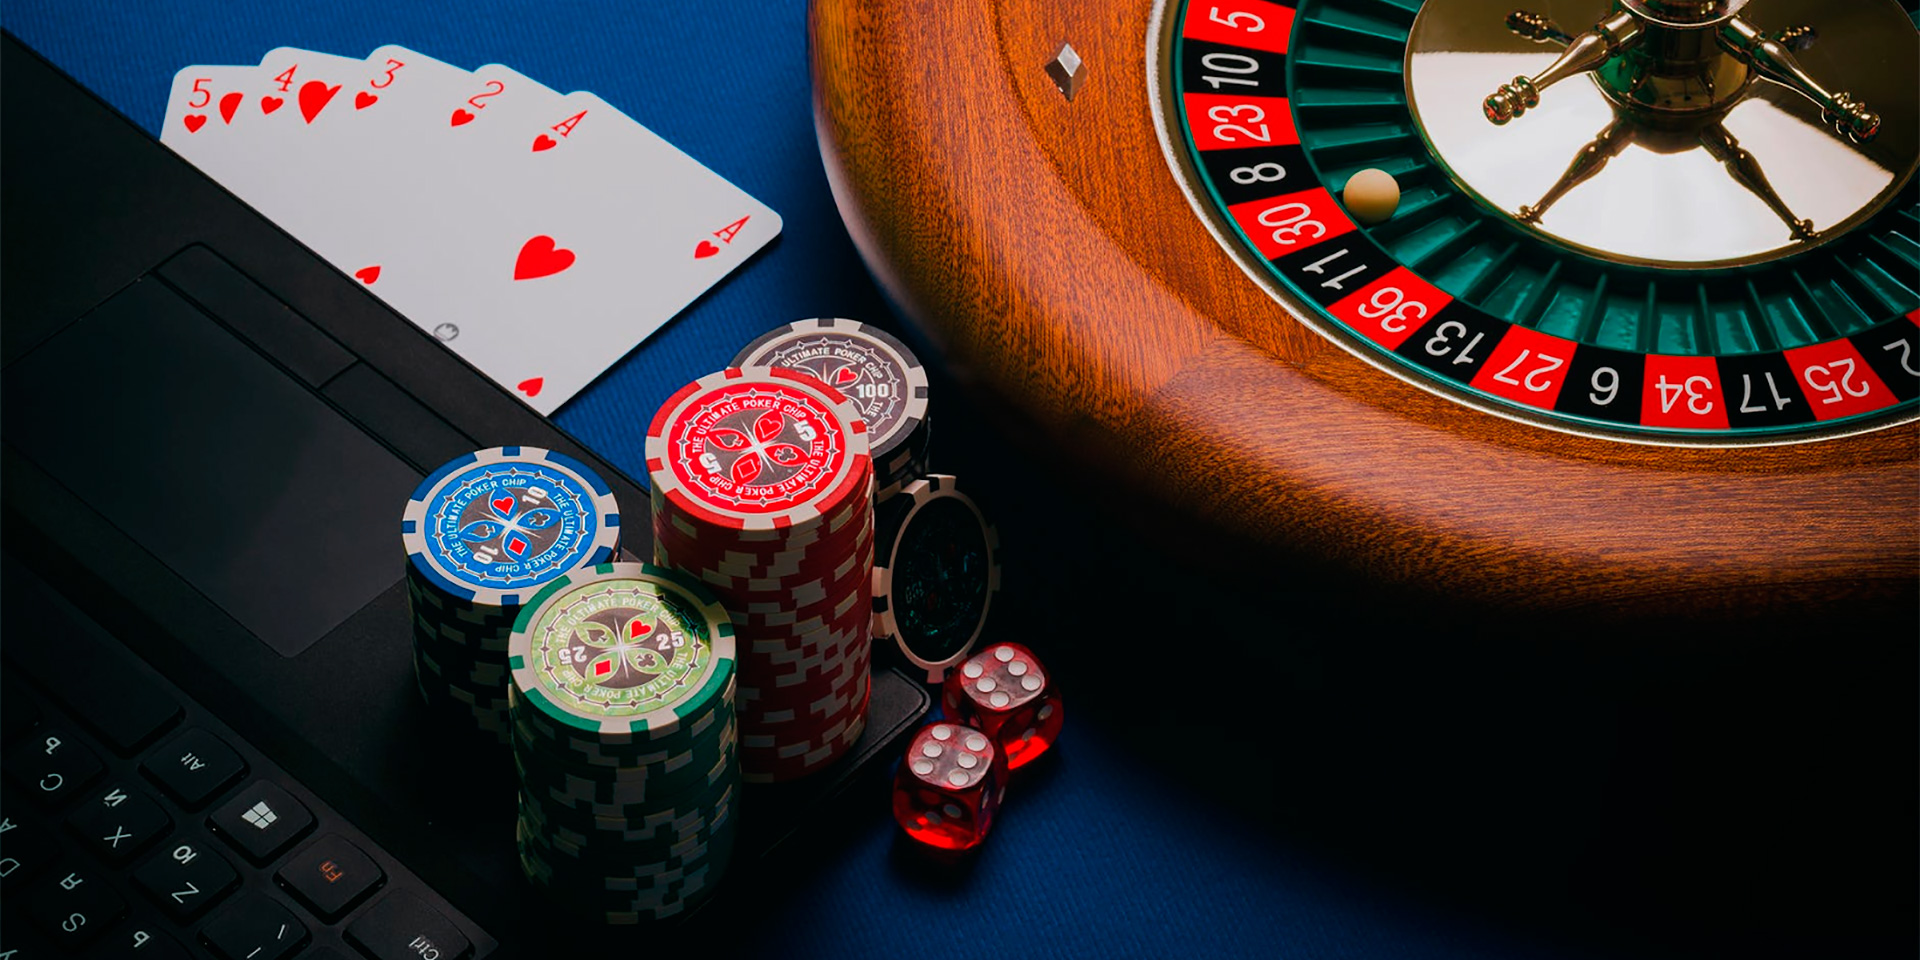 Сasinò Deposito Minimo 1 Euro: Entrare nel mondo del gioco d’azzardo con rischi minimi